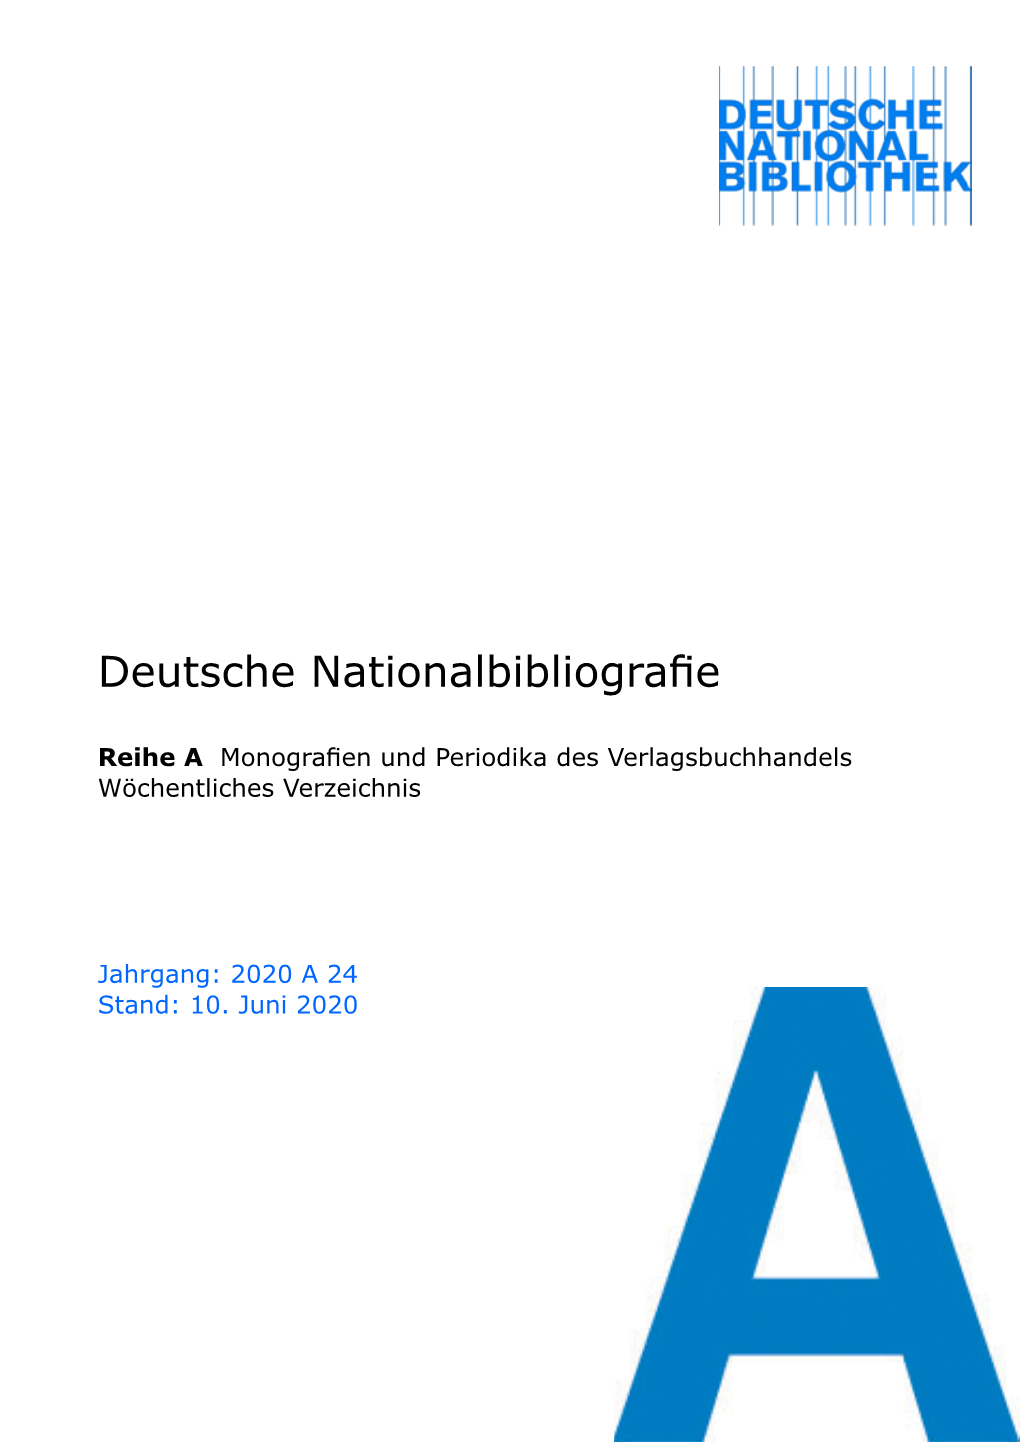 Deutsche Nationalbibliografie 2020 a 24